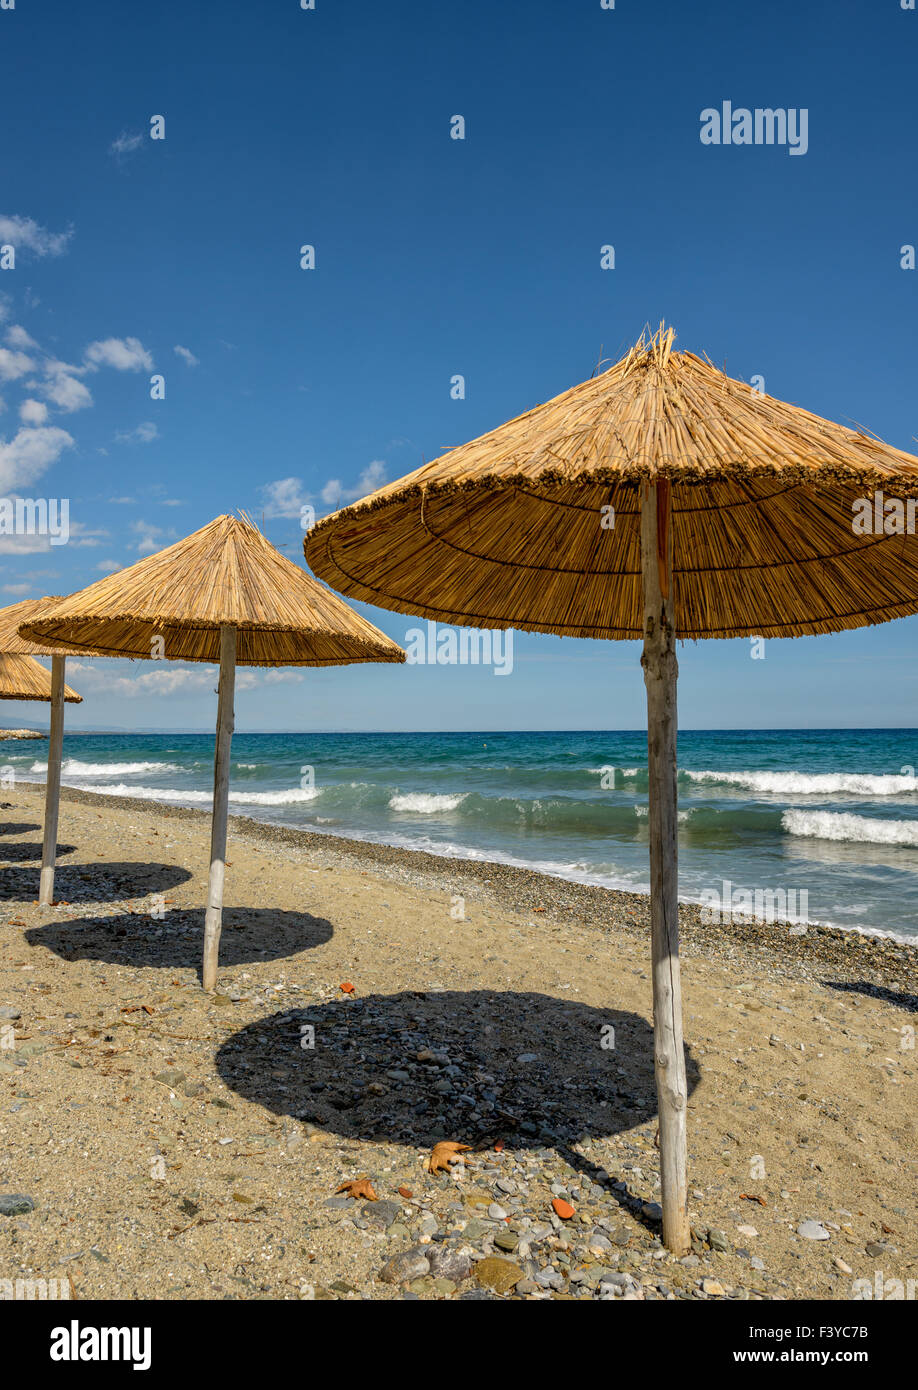 Resort beach Stock Photo